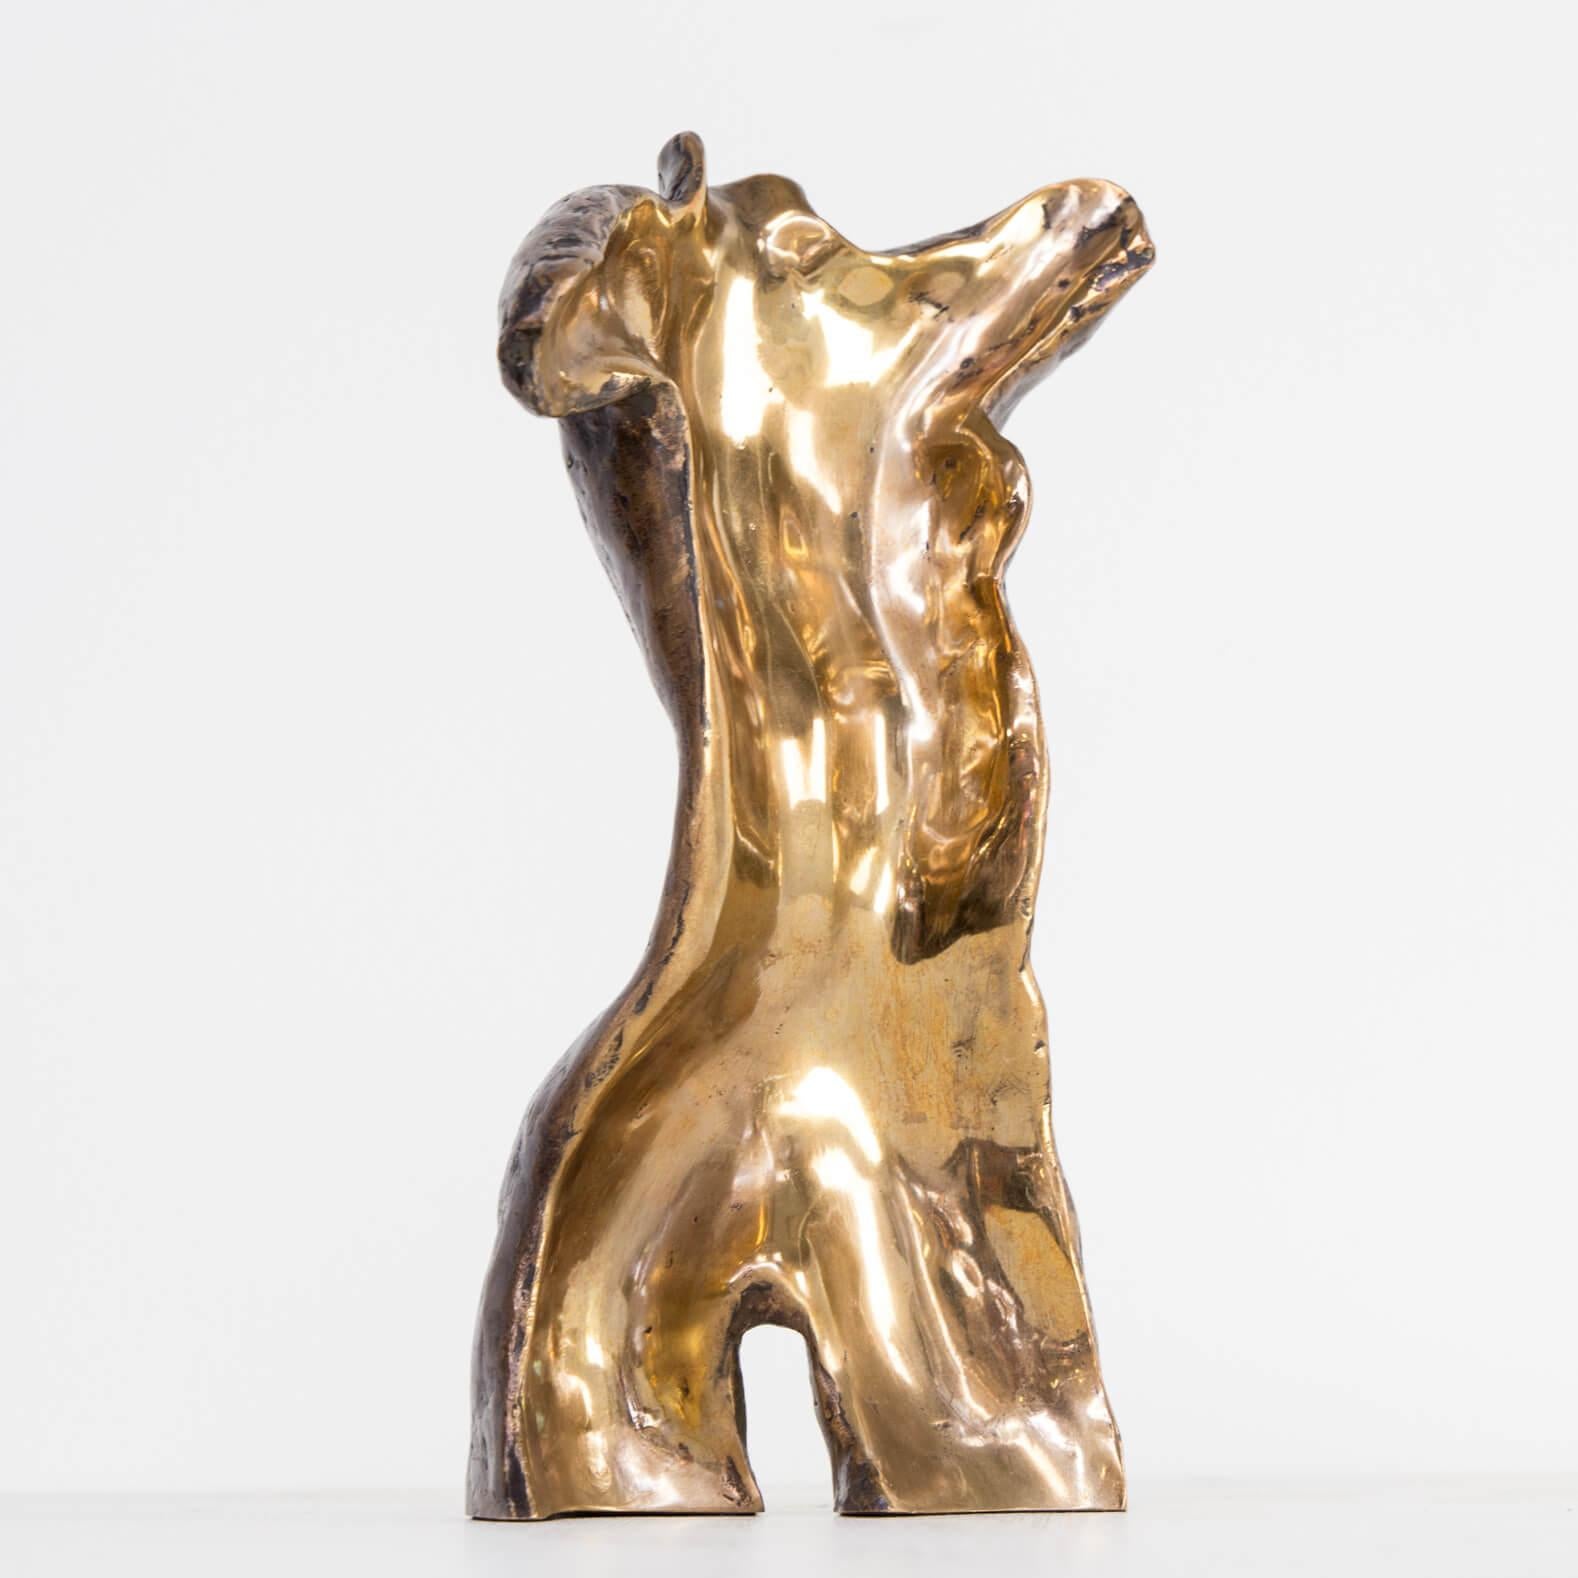 Bronze 2012 Jan Krikke Art Object ‘Torso’ For Sale